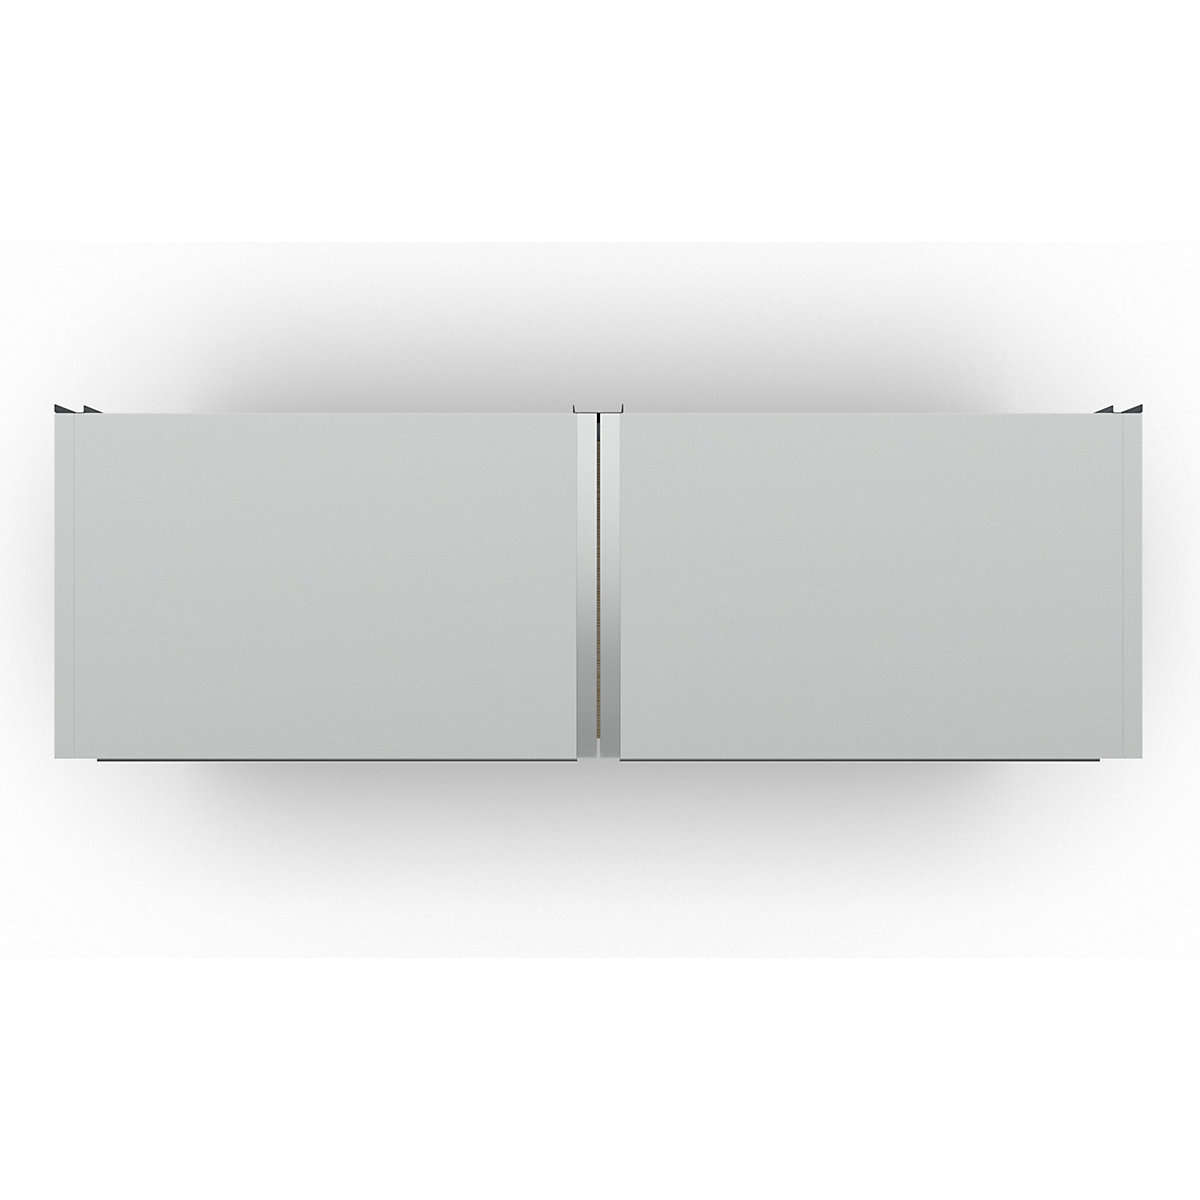 Sistem delavniških omar s spodnjo omarico s krilnimi vrati in predali (Slika izdelka 7)-6